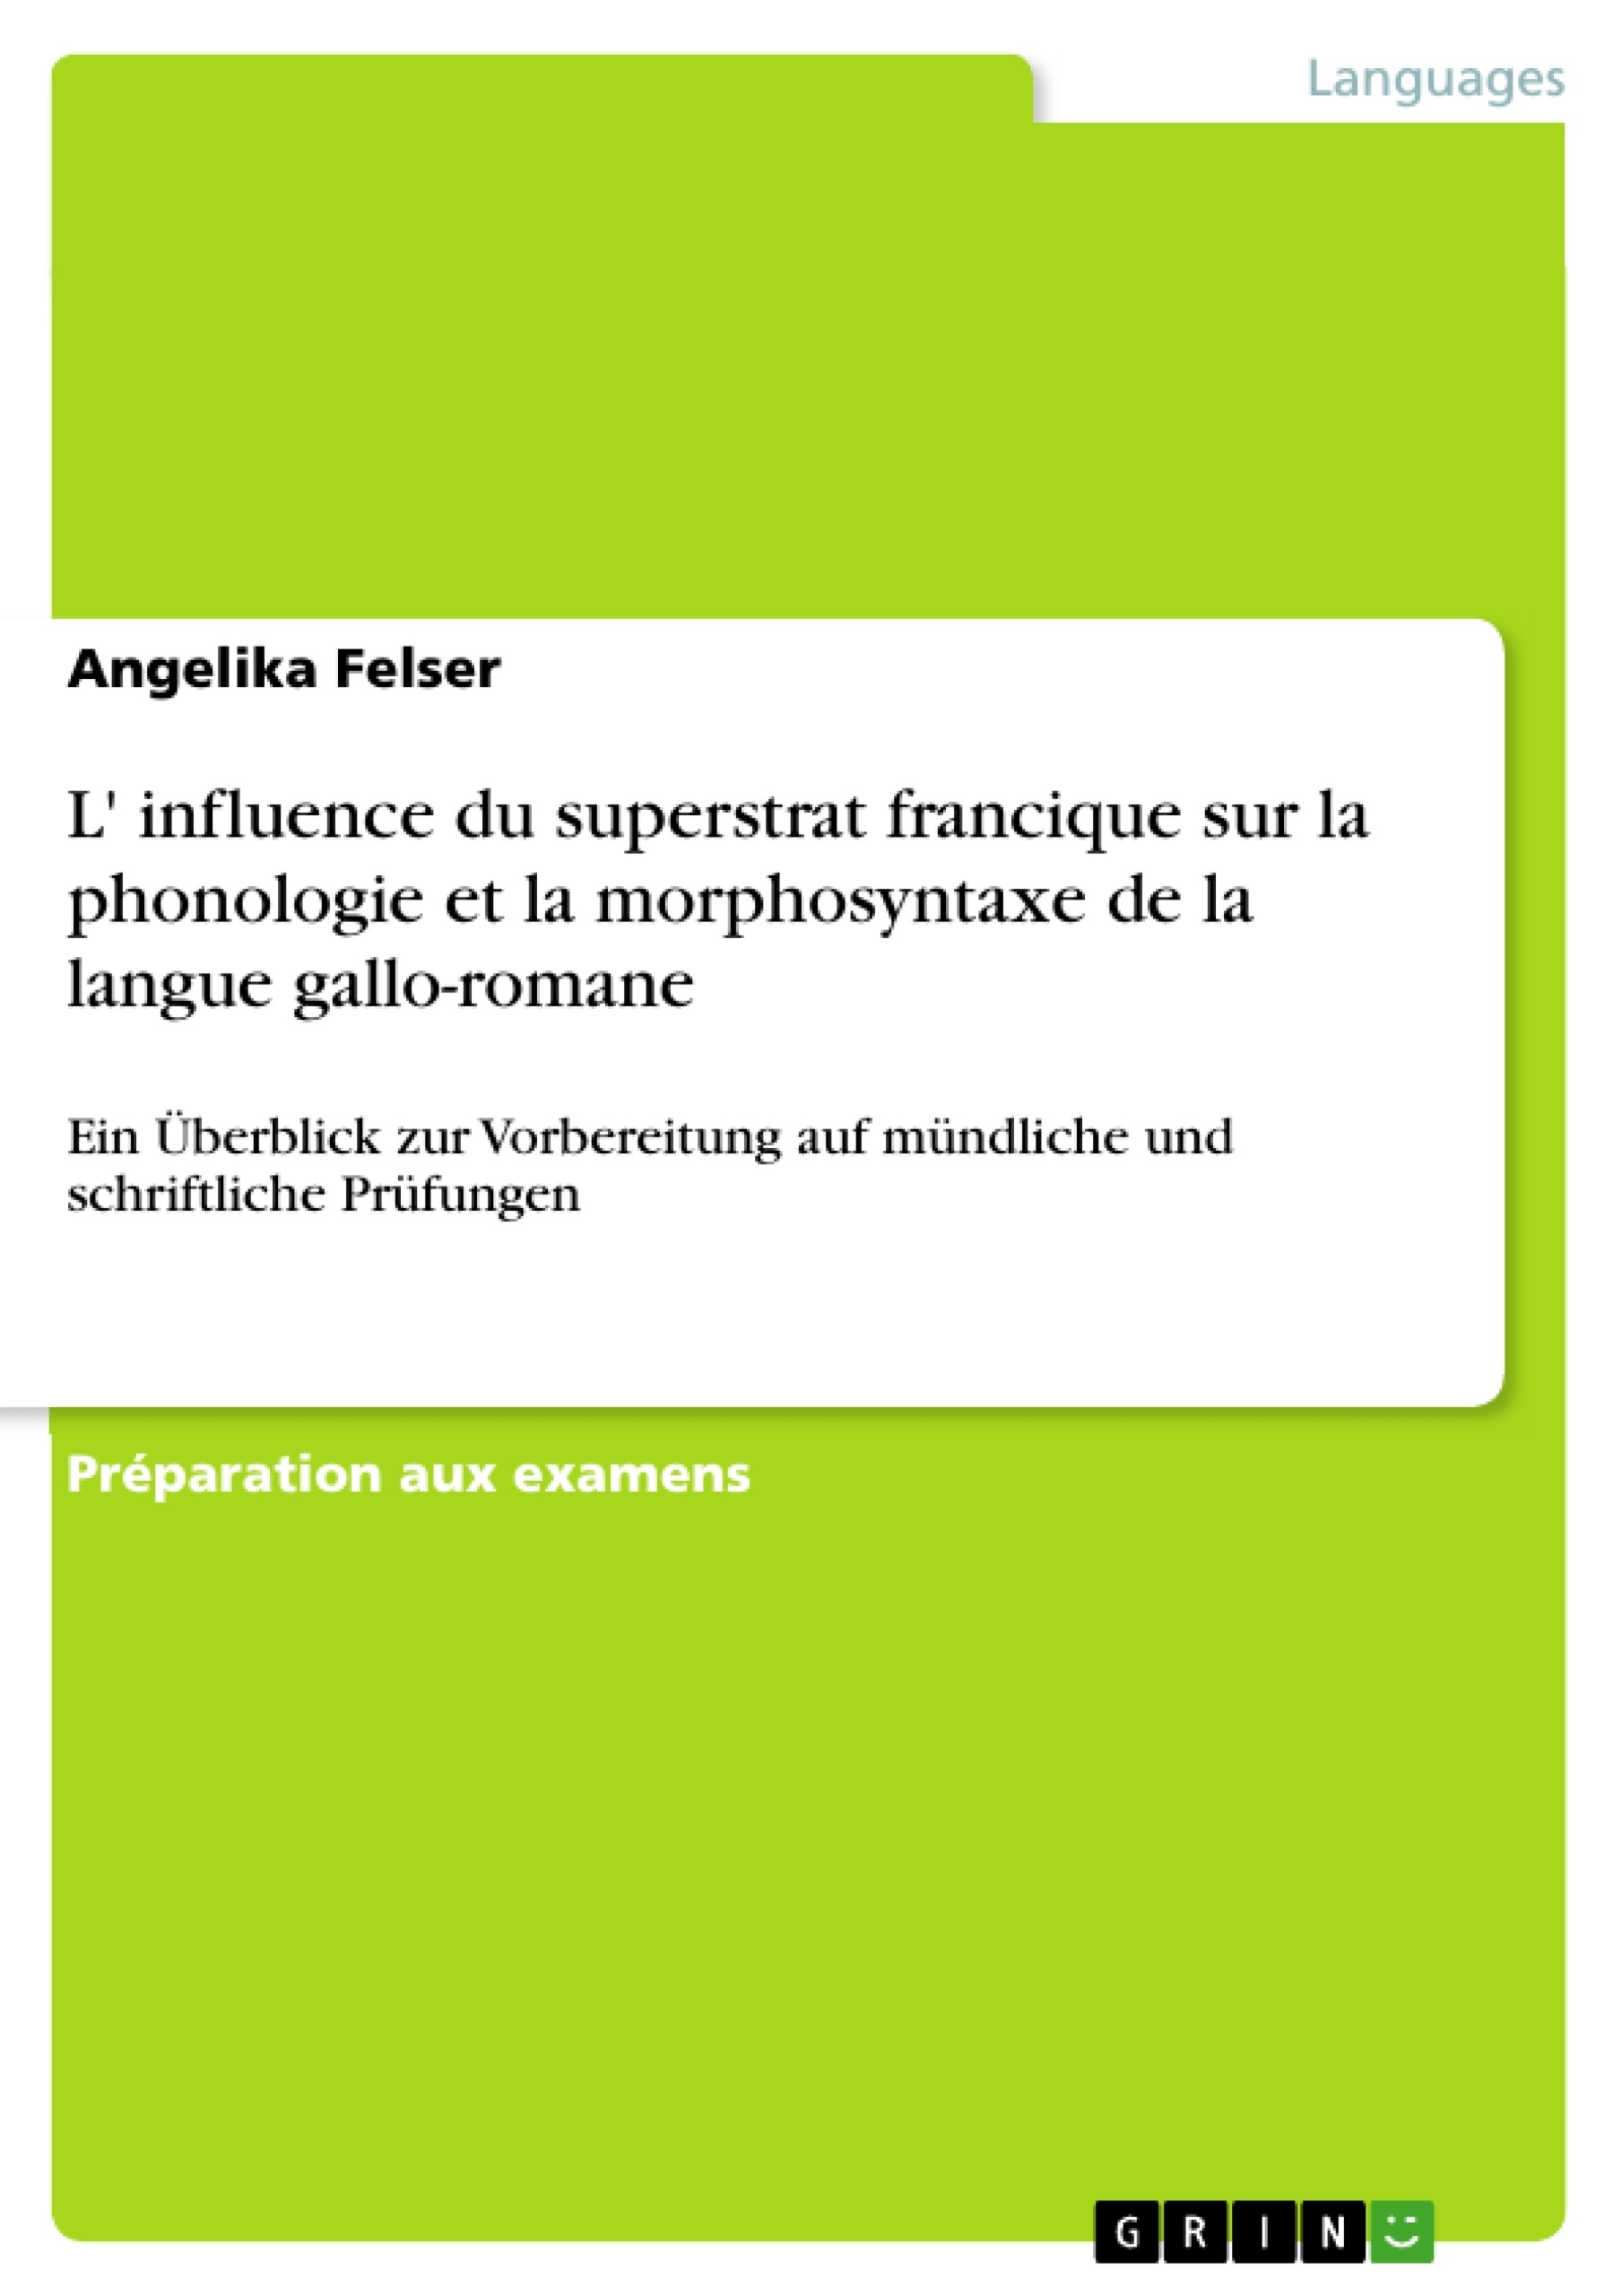 Título: L' influence du superstrat francique sur la phonologie et la morphosyntaxe de la langue gallo-romane